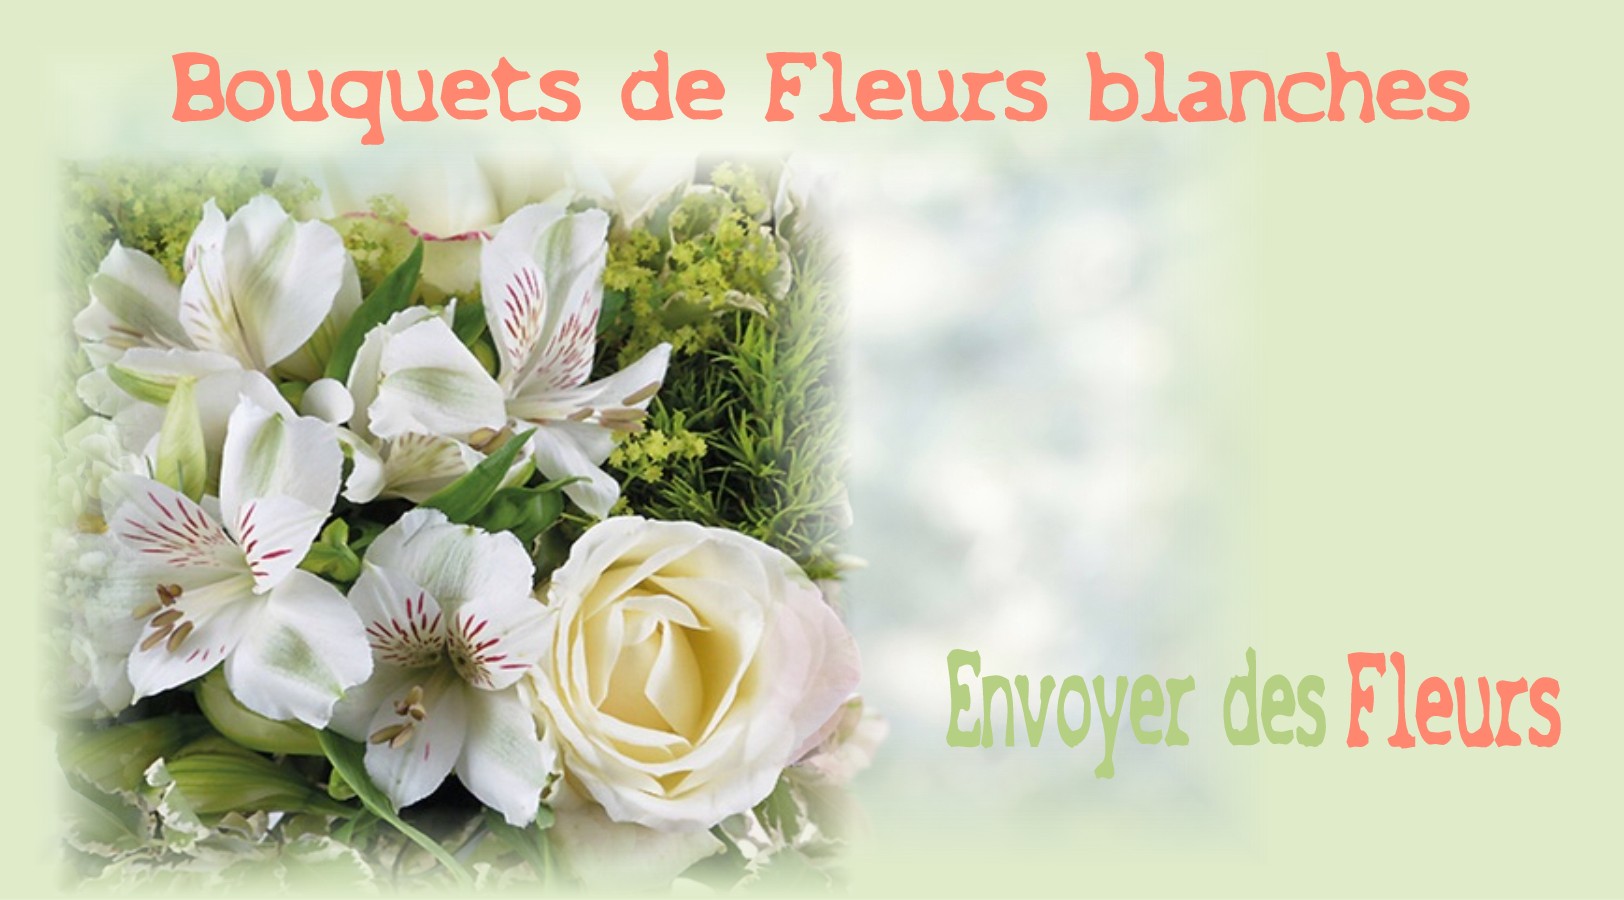 BOUQUETS DE FLEURS BLANCHES -FLEURISTE de l'AISNE - ENVOYER DES FLEURS